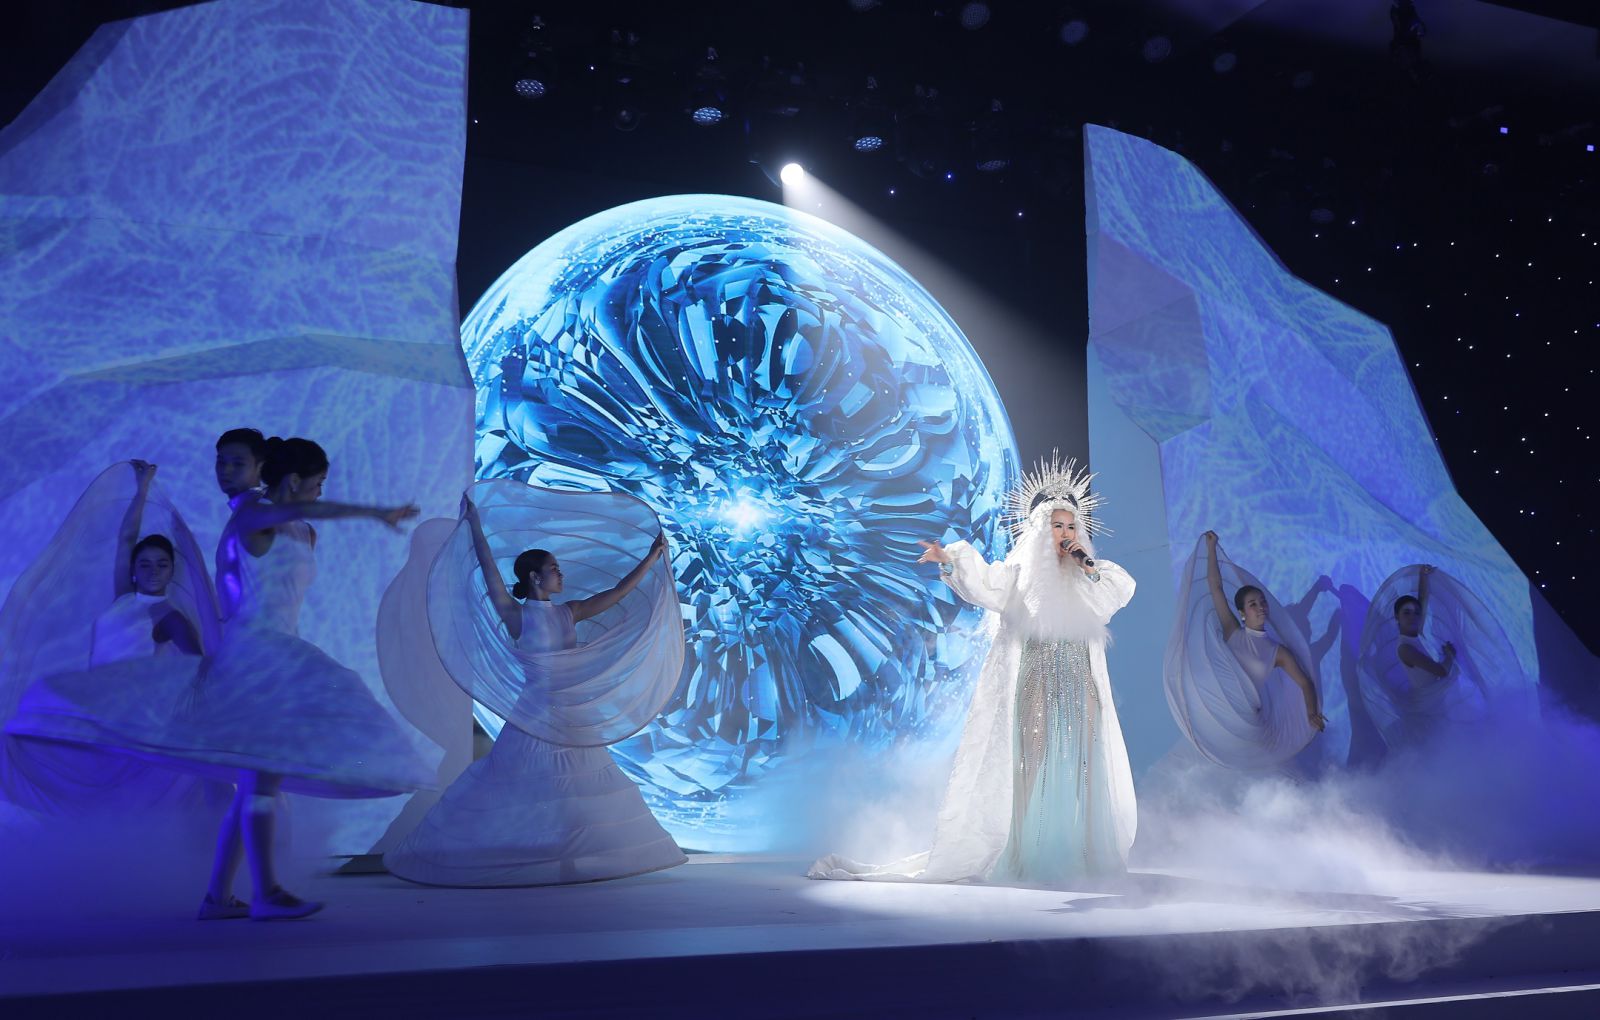 Trong vai trò “Nữ hoàng băng giá”, ca sĩ Võ Hạ Trâm đã mang cảm hứng của miềnp/tuyết trắng về với “thiên đường nhiệt đới” Phú Quốc